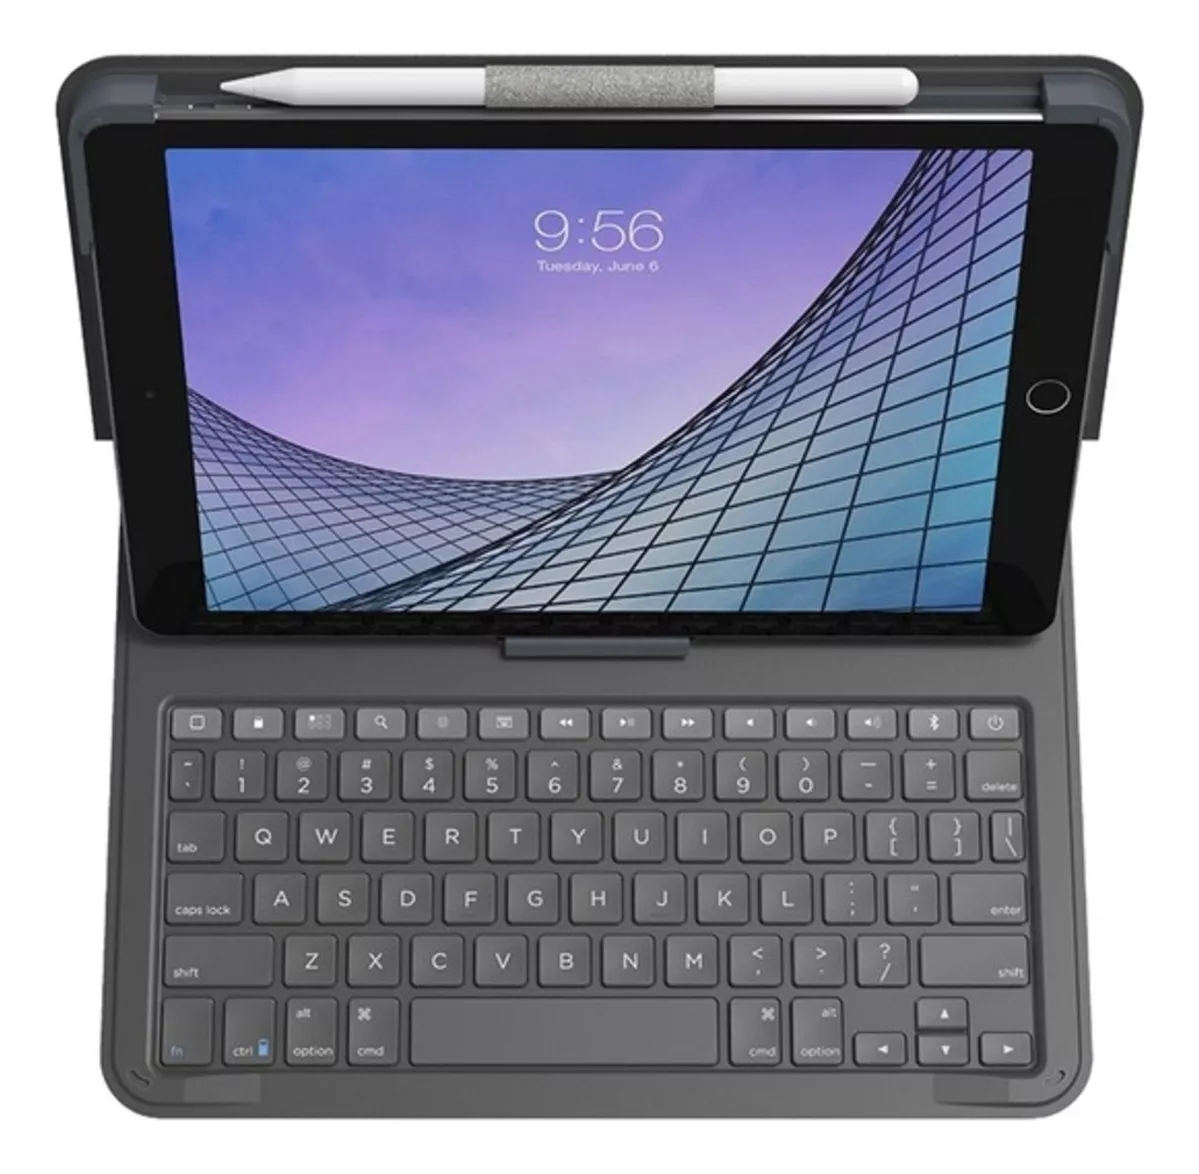 Primera imagen para búsqueda de teclado tablet